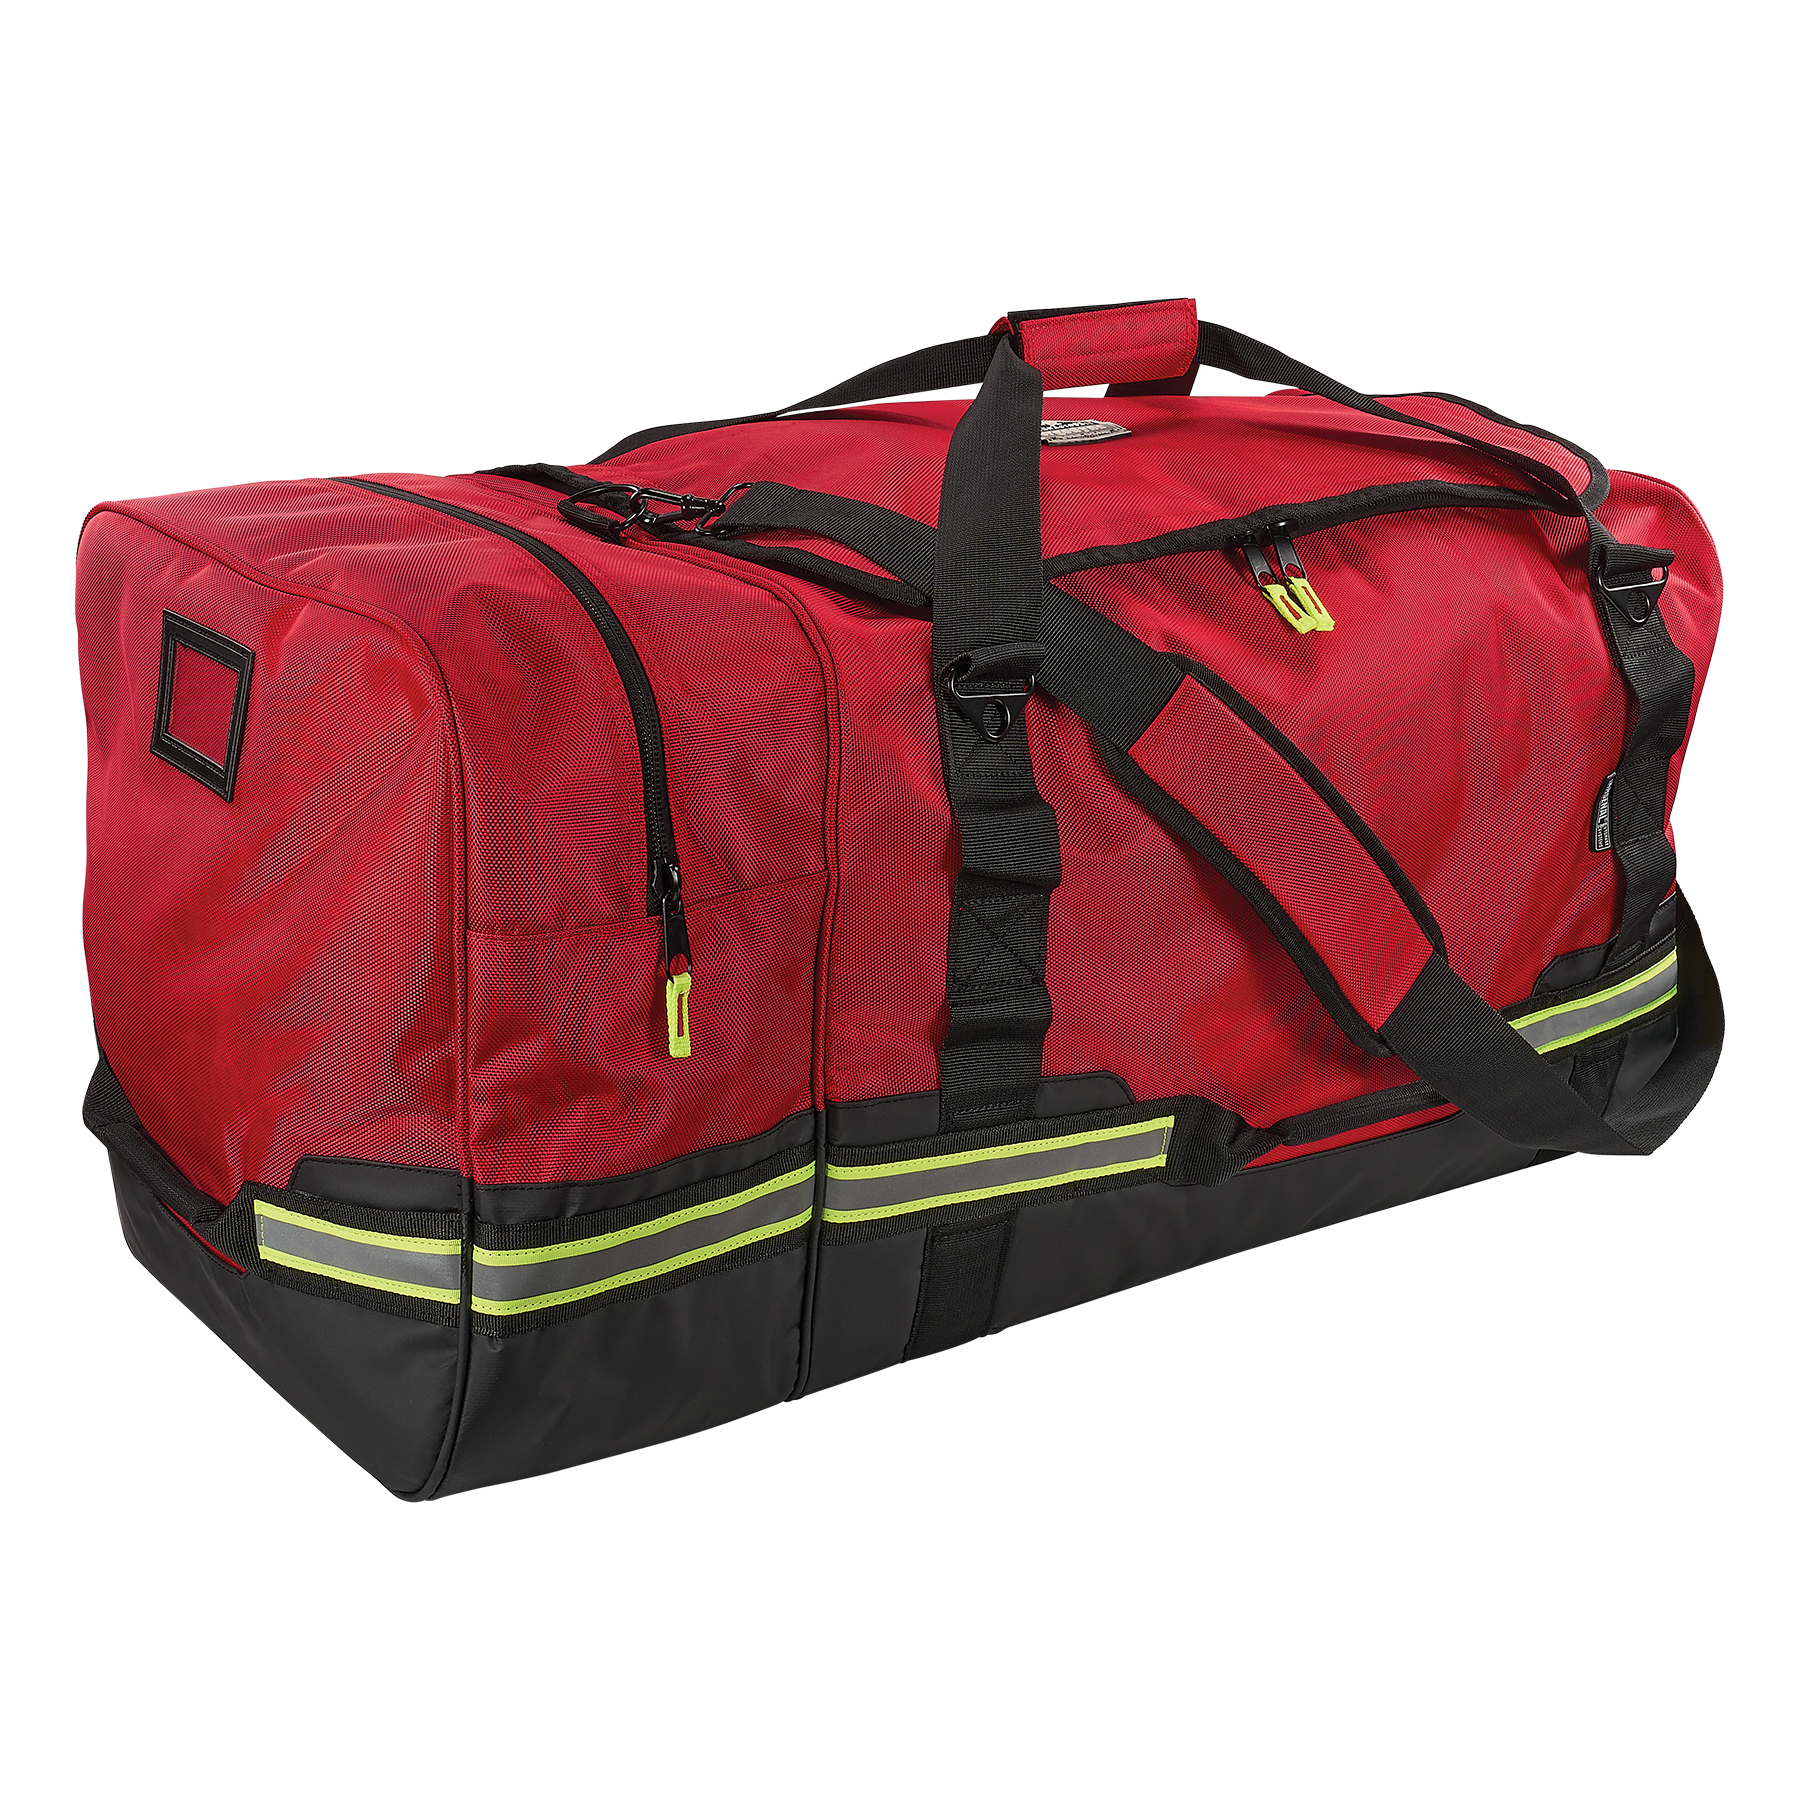 Firefighter Turnout Bag - Work Gear Duffel Bag, 126L